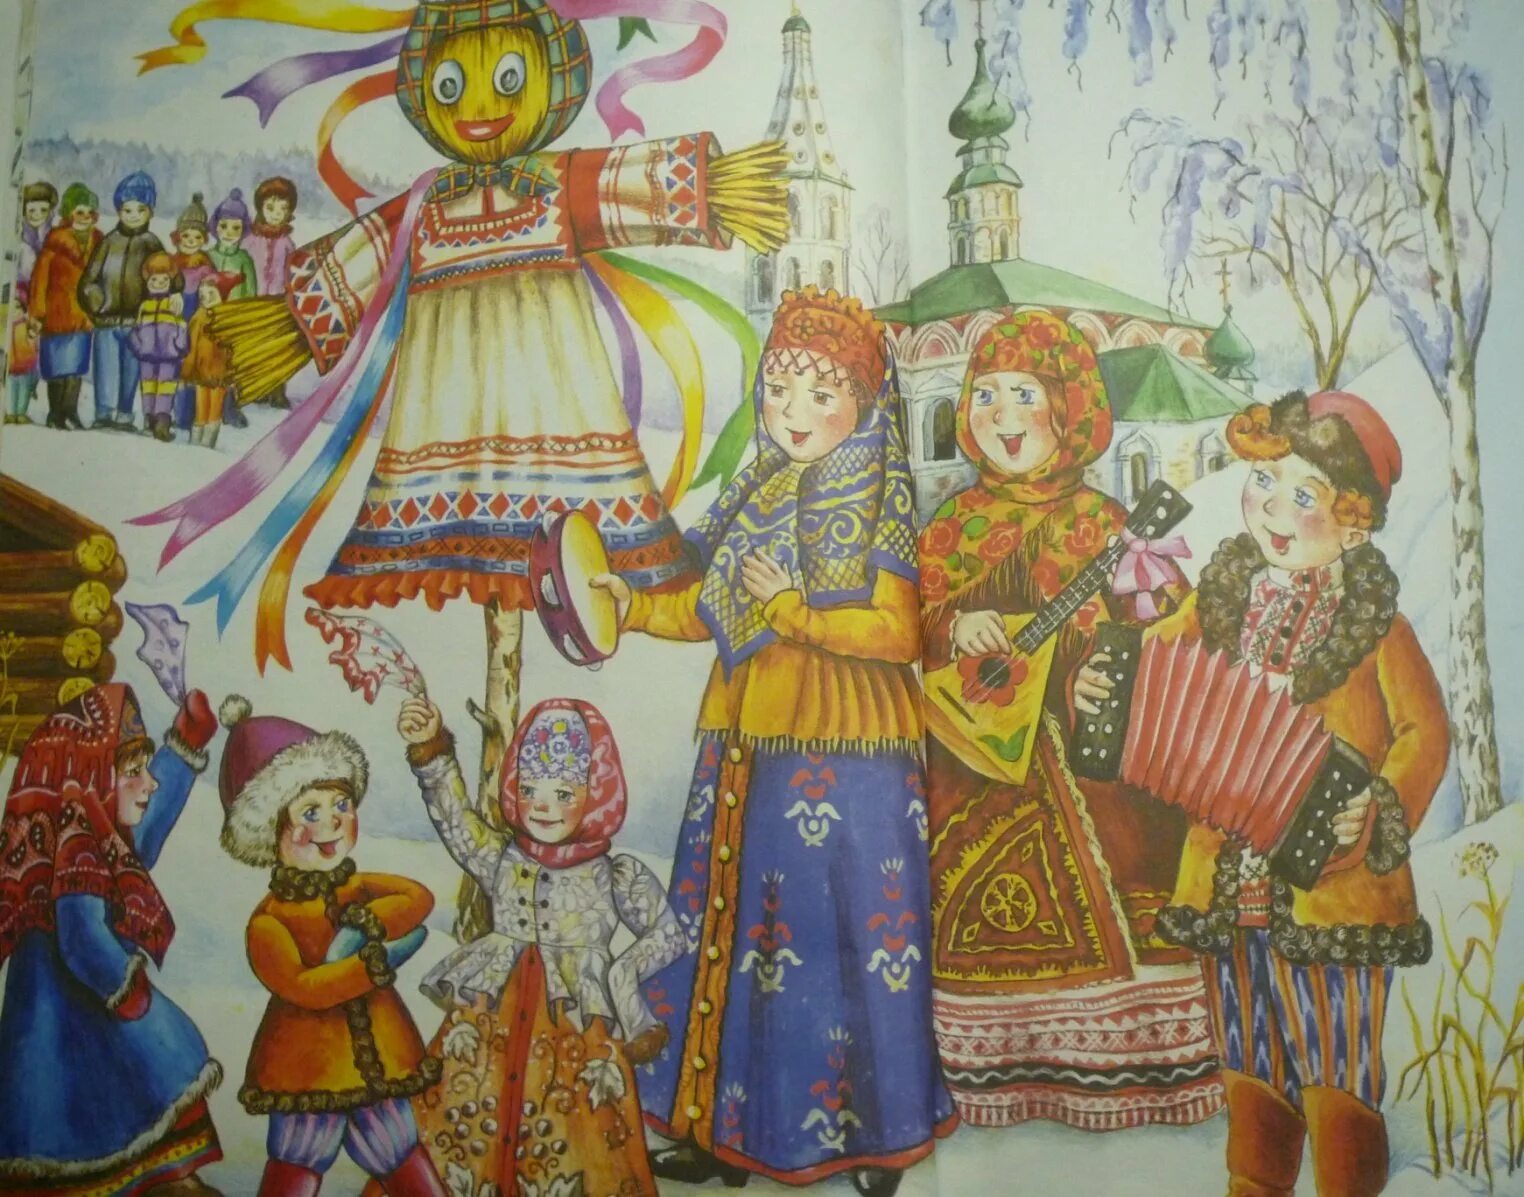 Н. Фетисов - "широкая Масленица". Масленичные гуляния в древней Руси. Музыка для масленицы для детей без слов